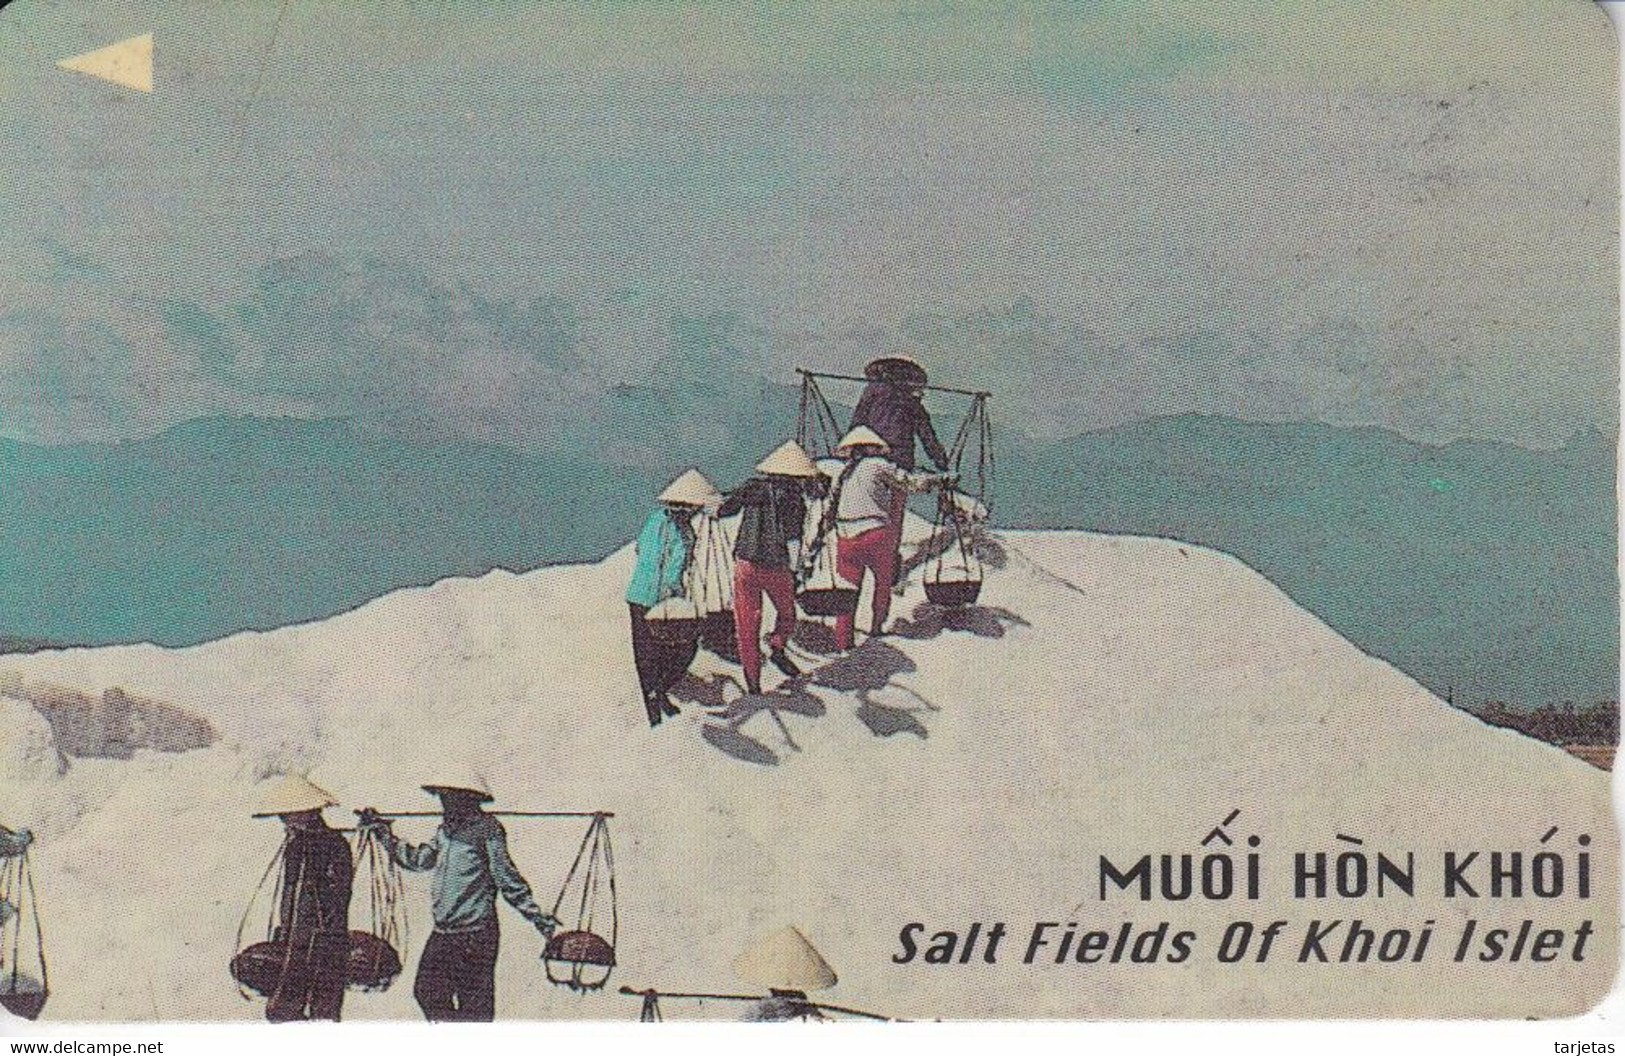 (97MVSB) TARJETA DE VIETNAM DE SALT FIELDS OF KHOI ISLET (rozada) - Vietnam